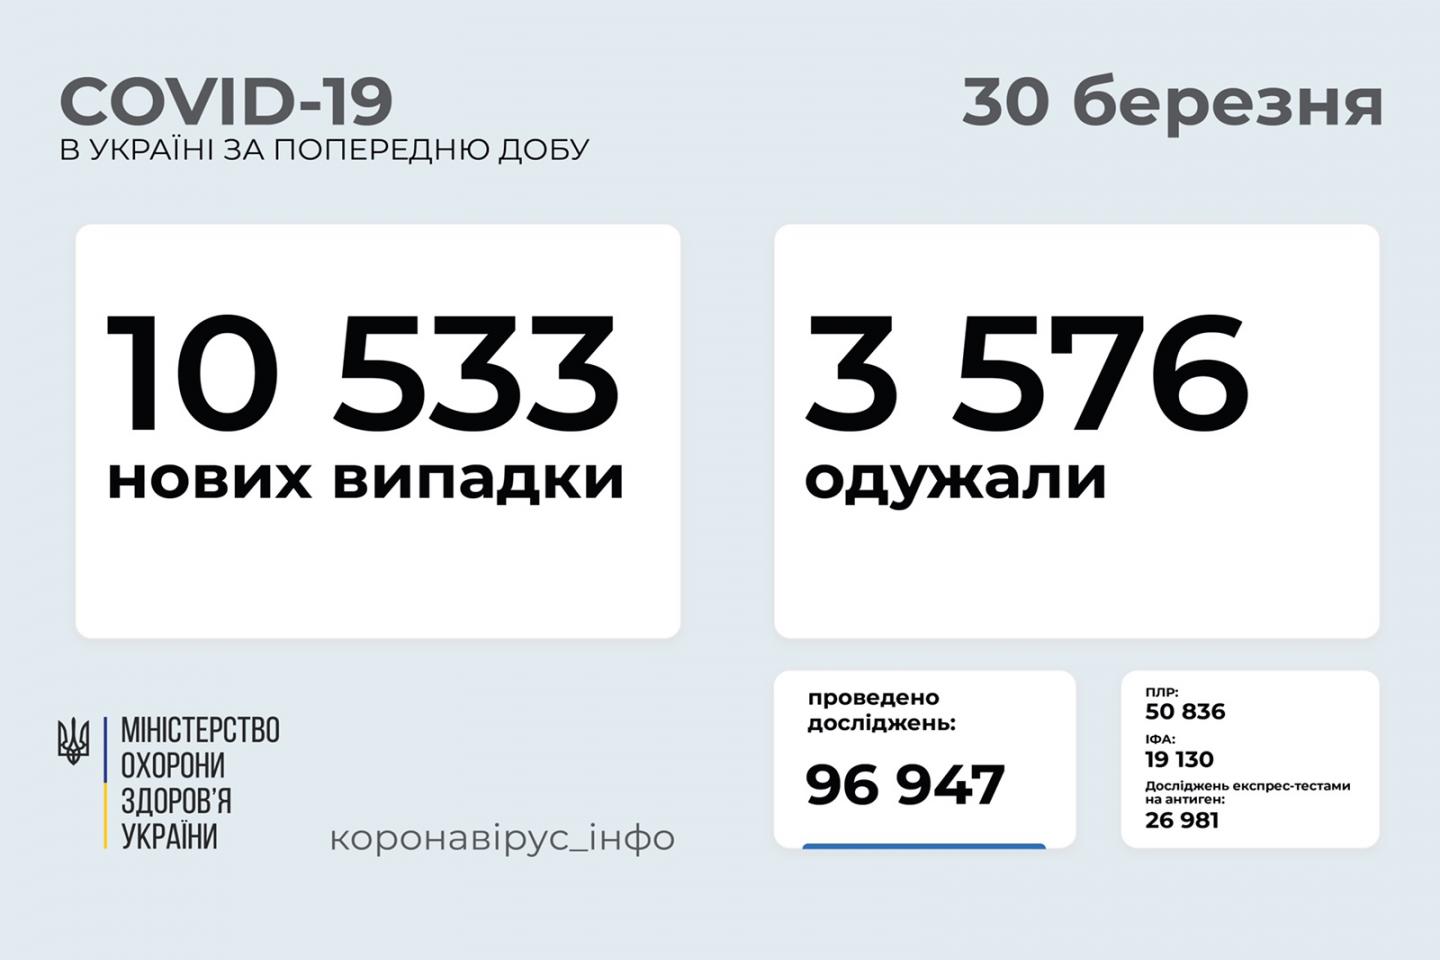 http://dunrada.gov.ua/uploadfile/archive_news/2021/03/30/2021-03-30_5725/images/images-45453.jpg